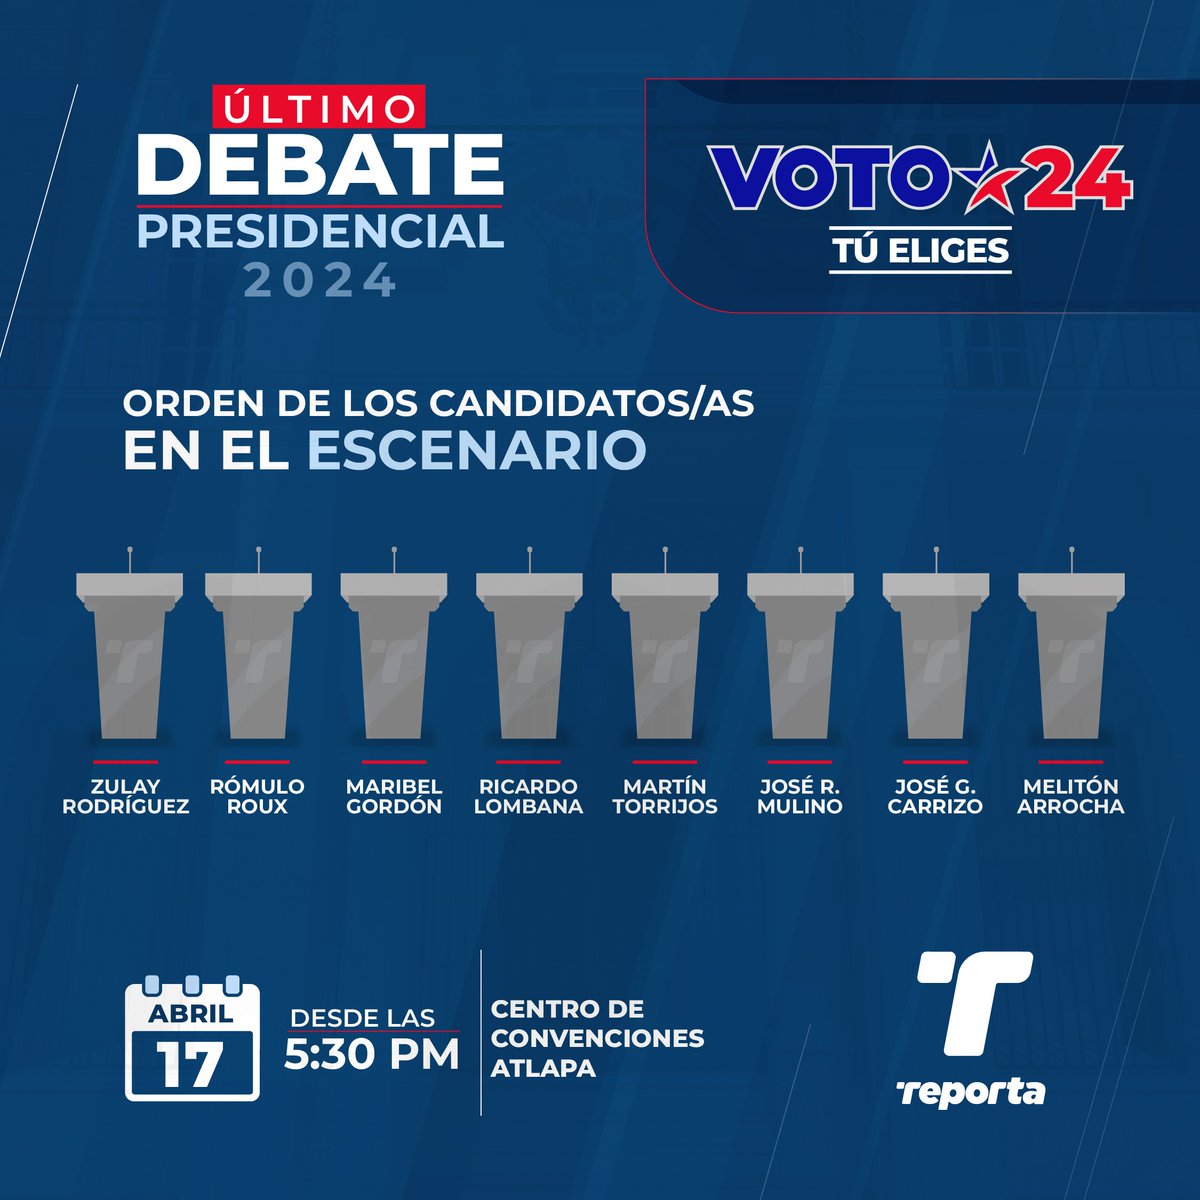 Este es el orden de ubicación de los candidatos para el último debate presidencial, que será este miércoles 17 de abril, en Atlapa. La organización y producción de este debate está a cargo de @CCIYAP y Medcom junto con @tepanama. #Voto24 #TReporta